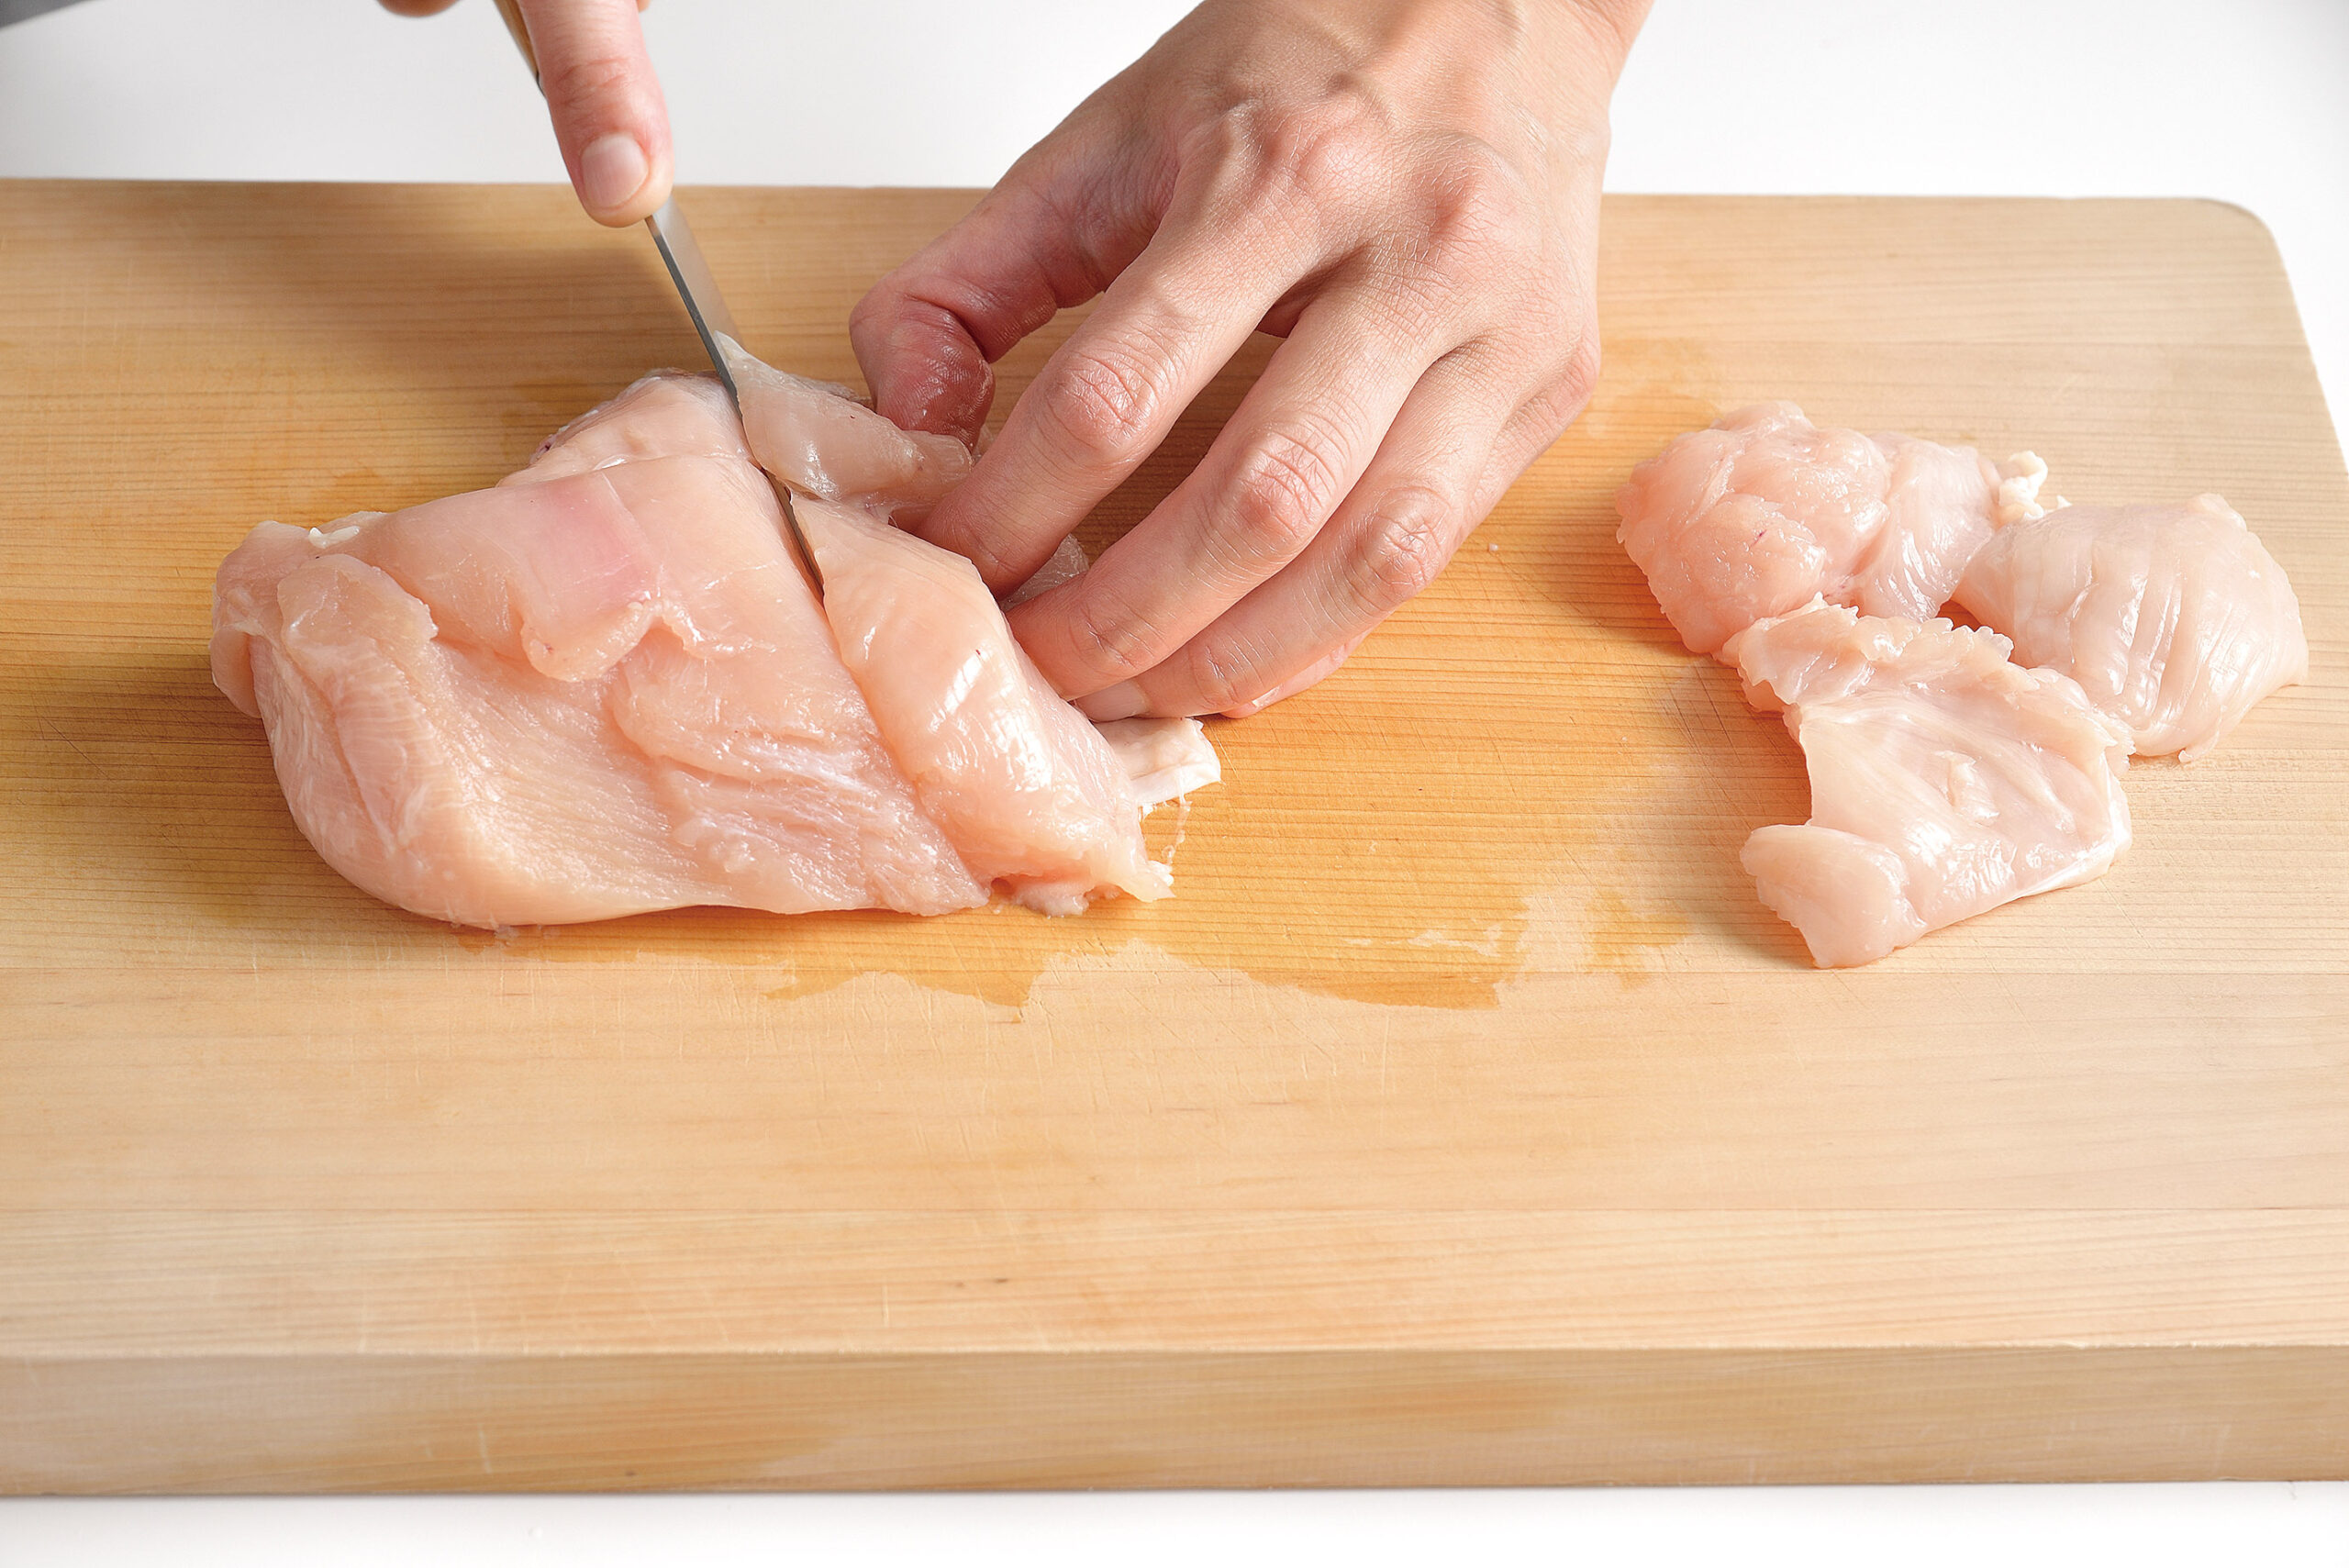 鶏肉は2cm幅のそぎ切りにして、大きければ半分に切る。れんこんは皮をむいて1cm幅の半月切りにし、5分ほど水にさらして水気を拭き取る。水菜は4cm長さに切る。